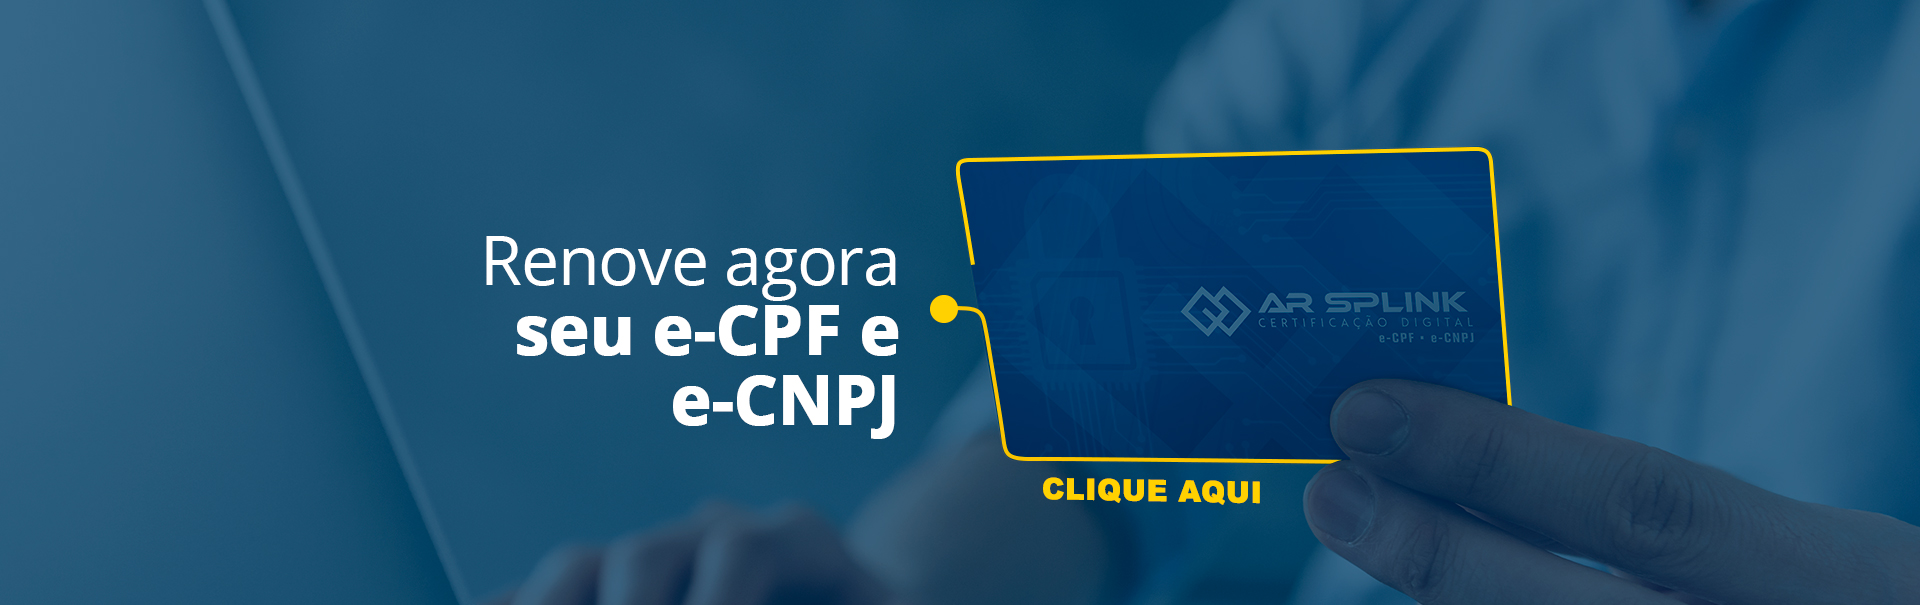 Renovação e-CPF e e-CNPJ